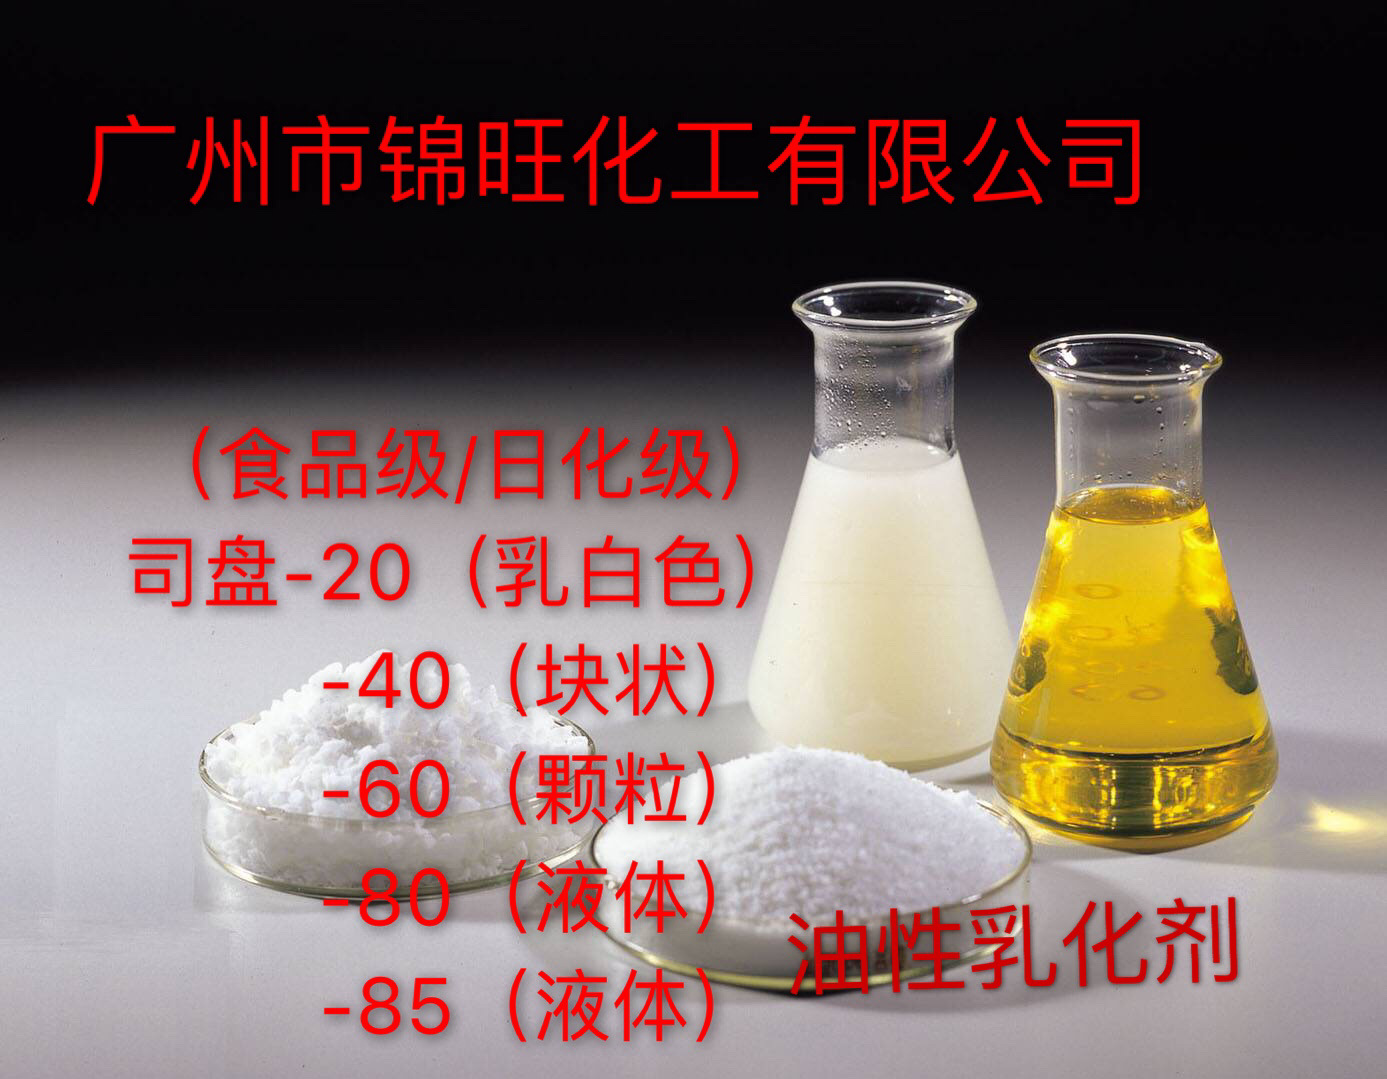 司盘S-20(食品/日化级) 油性乳化剂 (可小量定购)